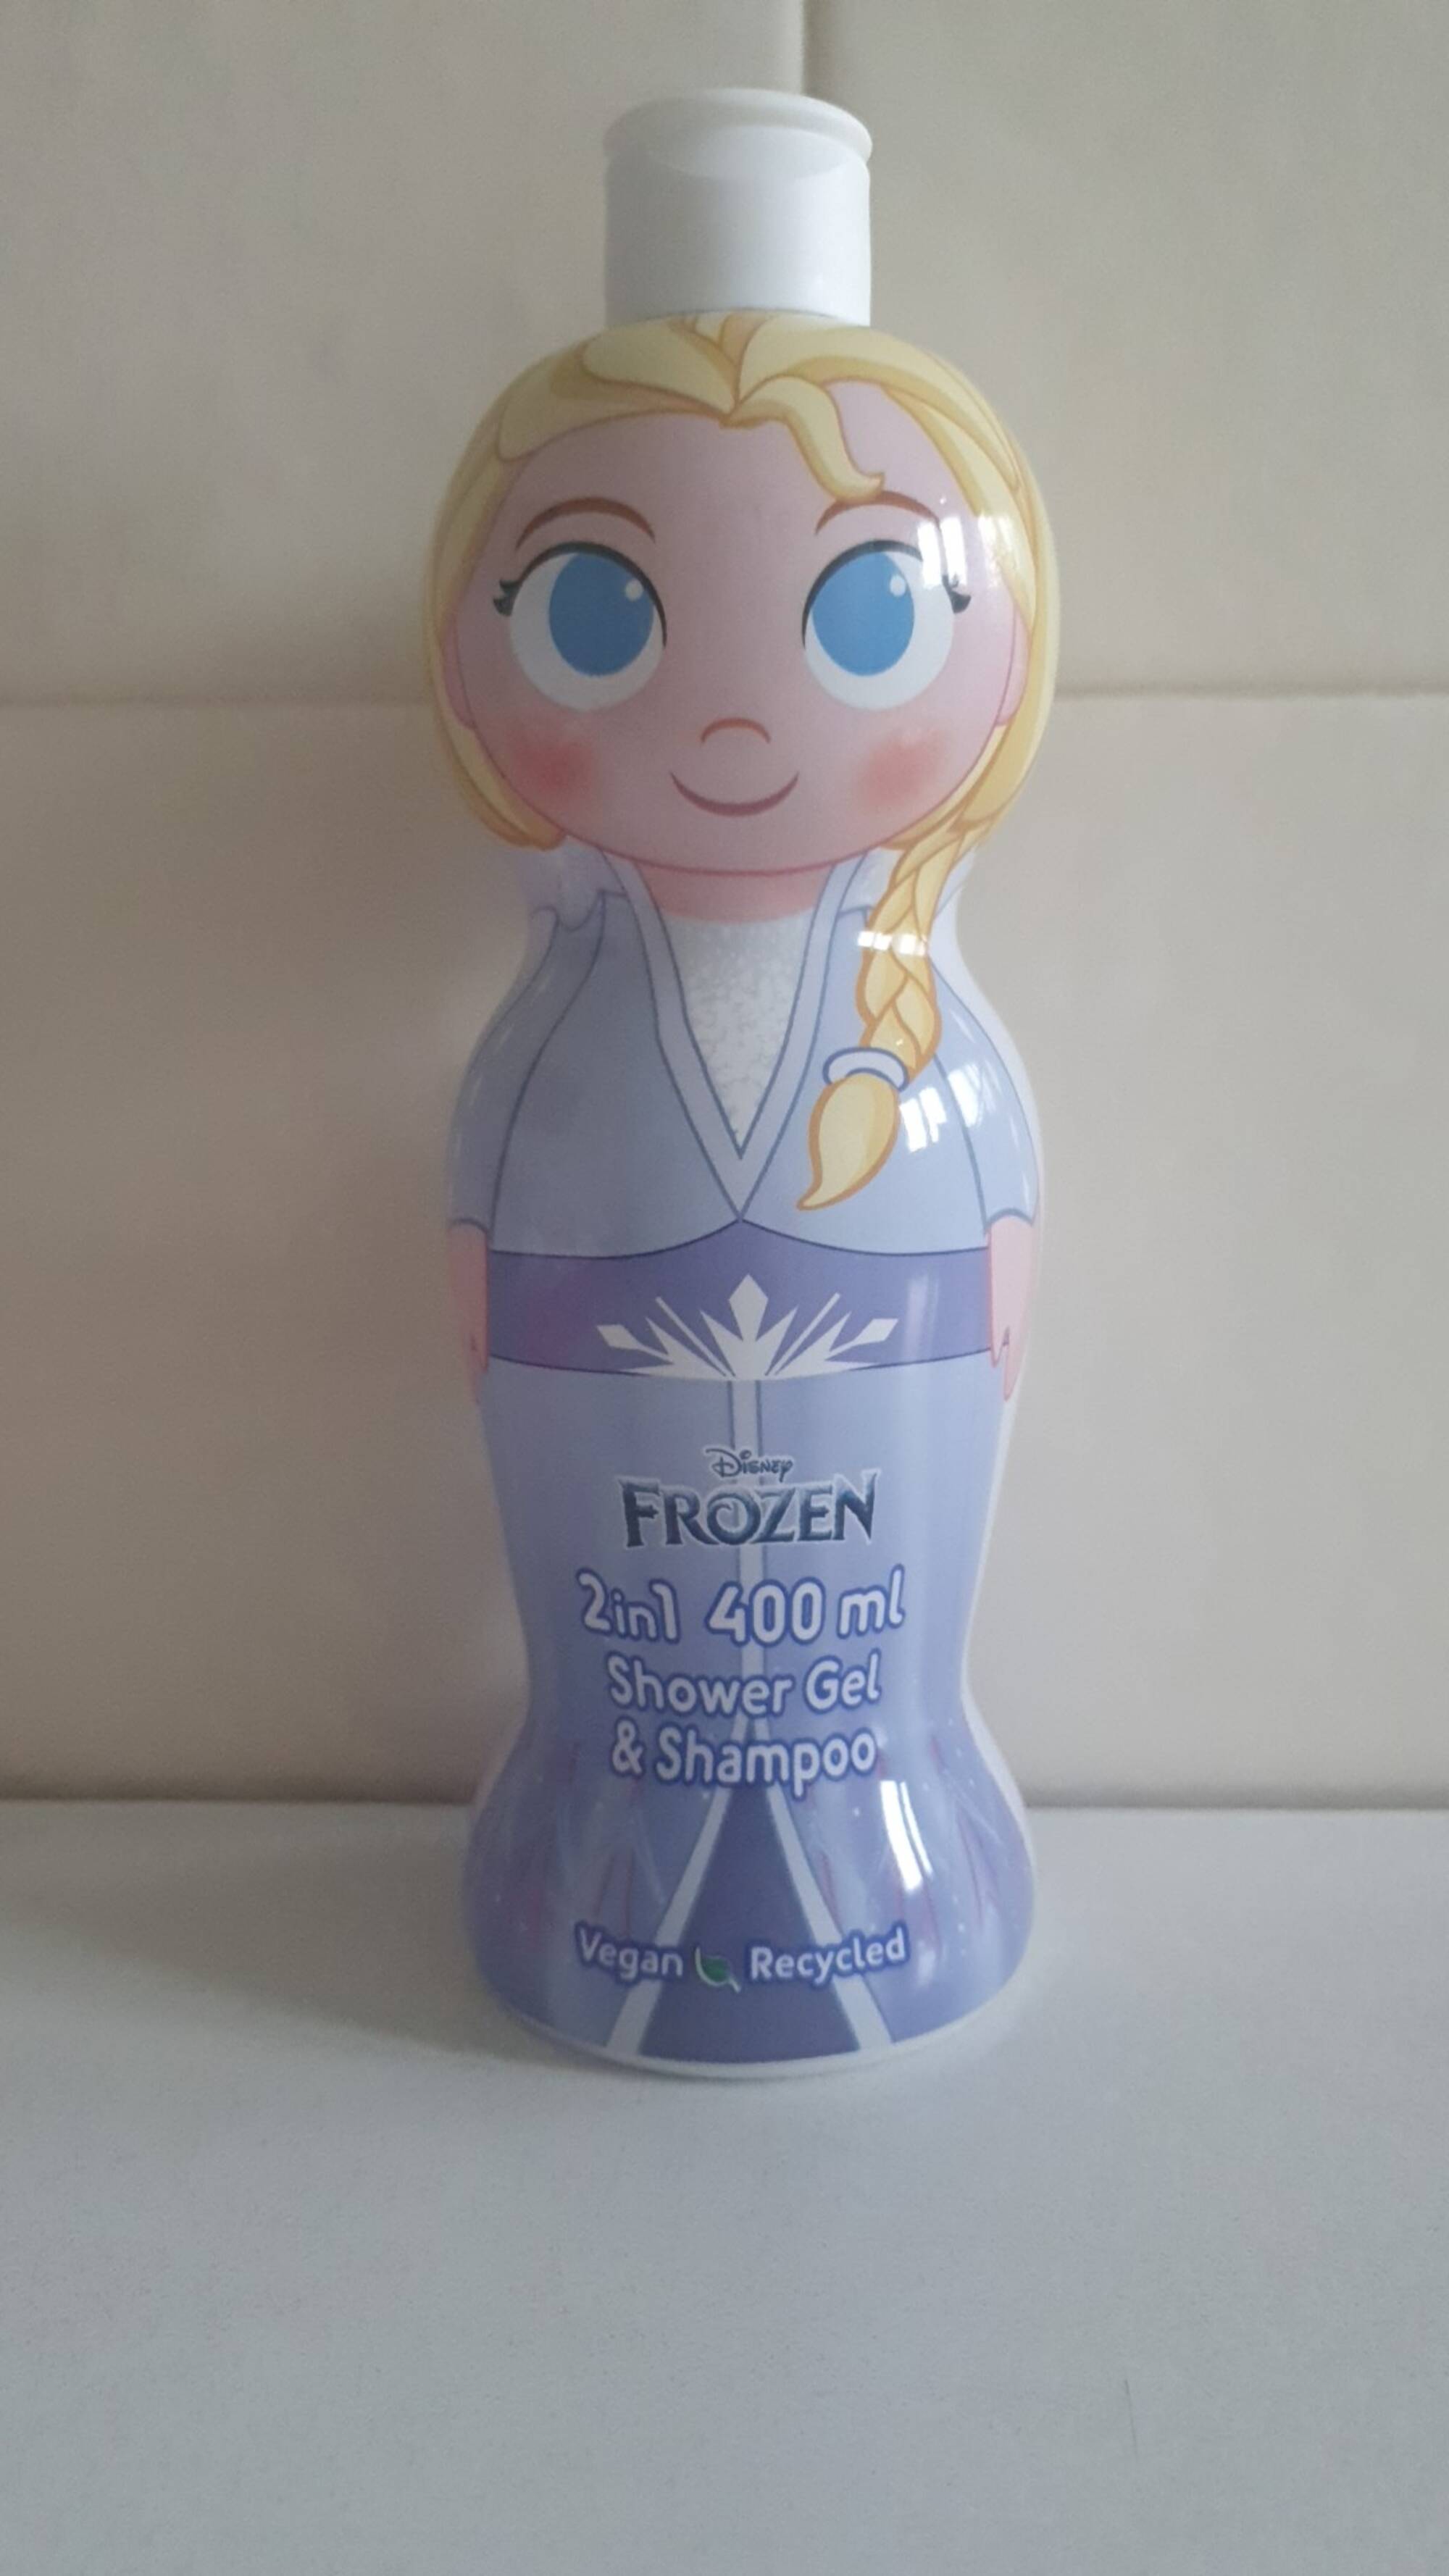 DISNEY FROZEN - 2 in 1 Shower gel & Shampoo 